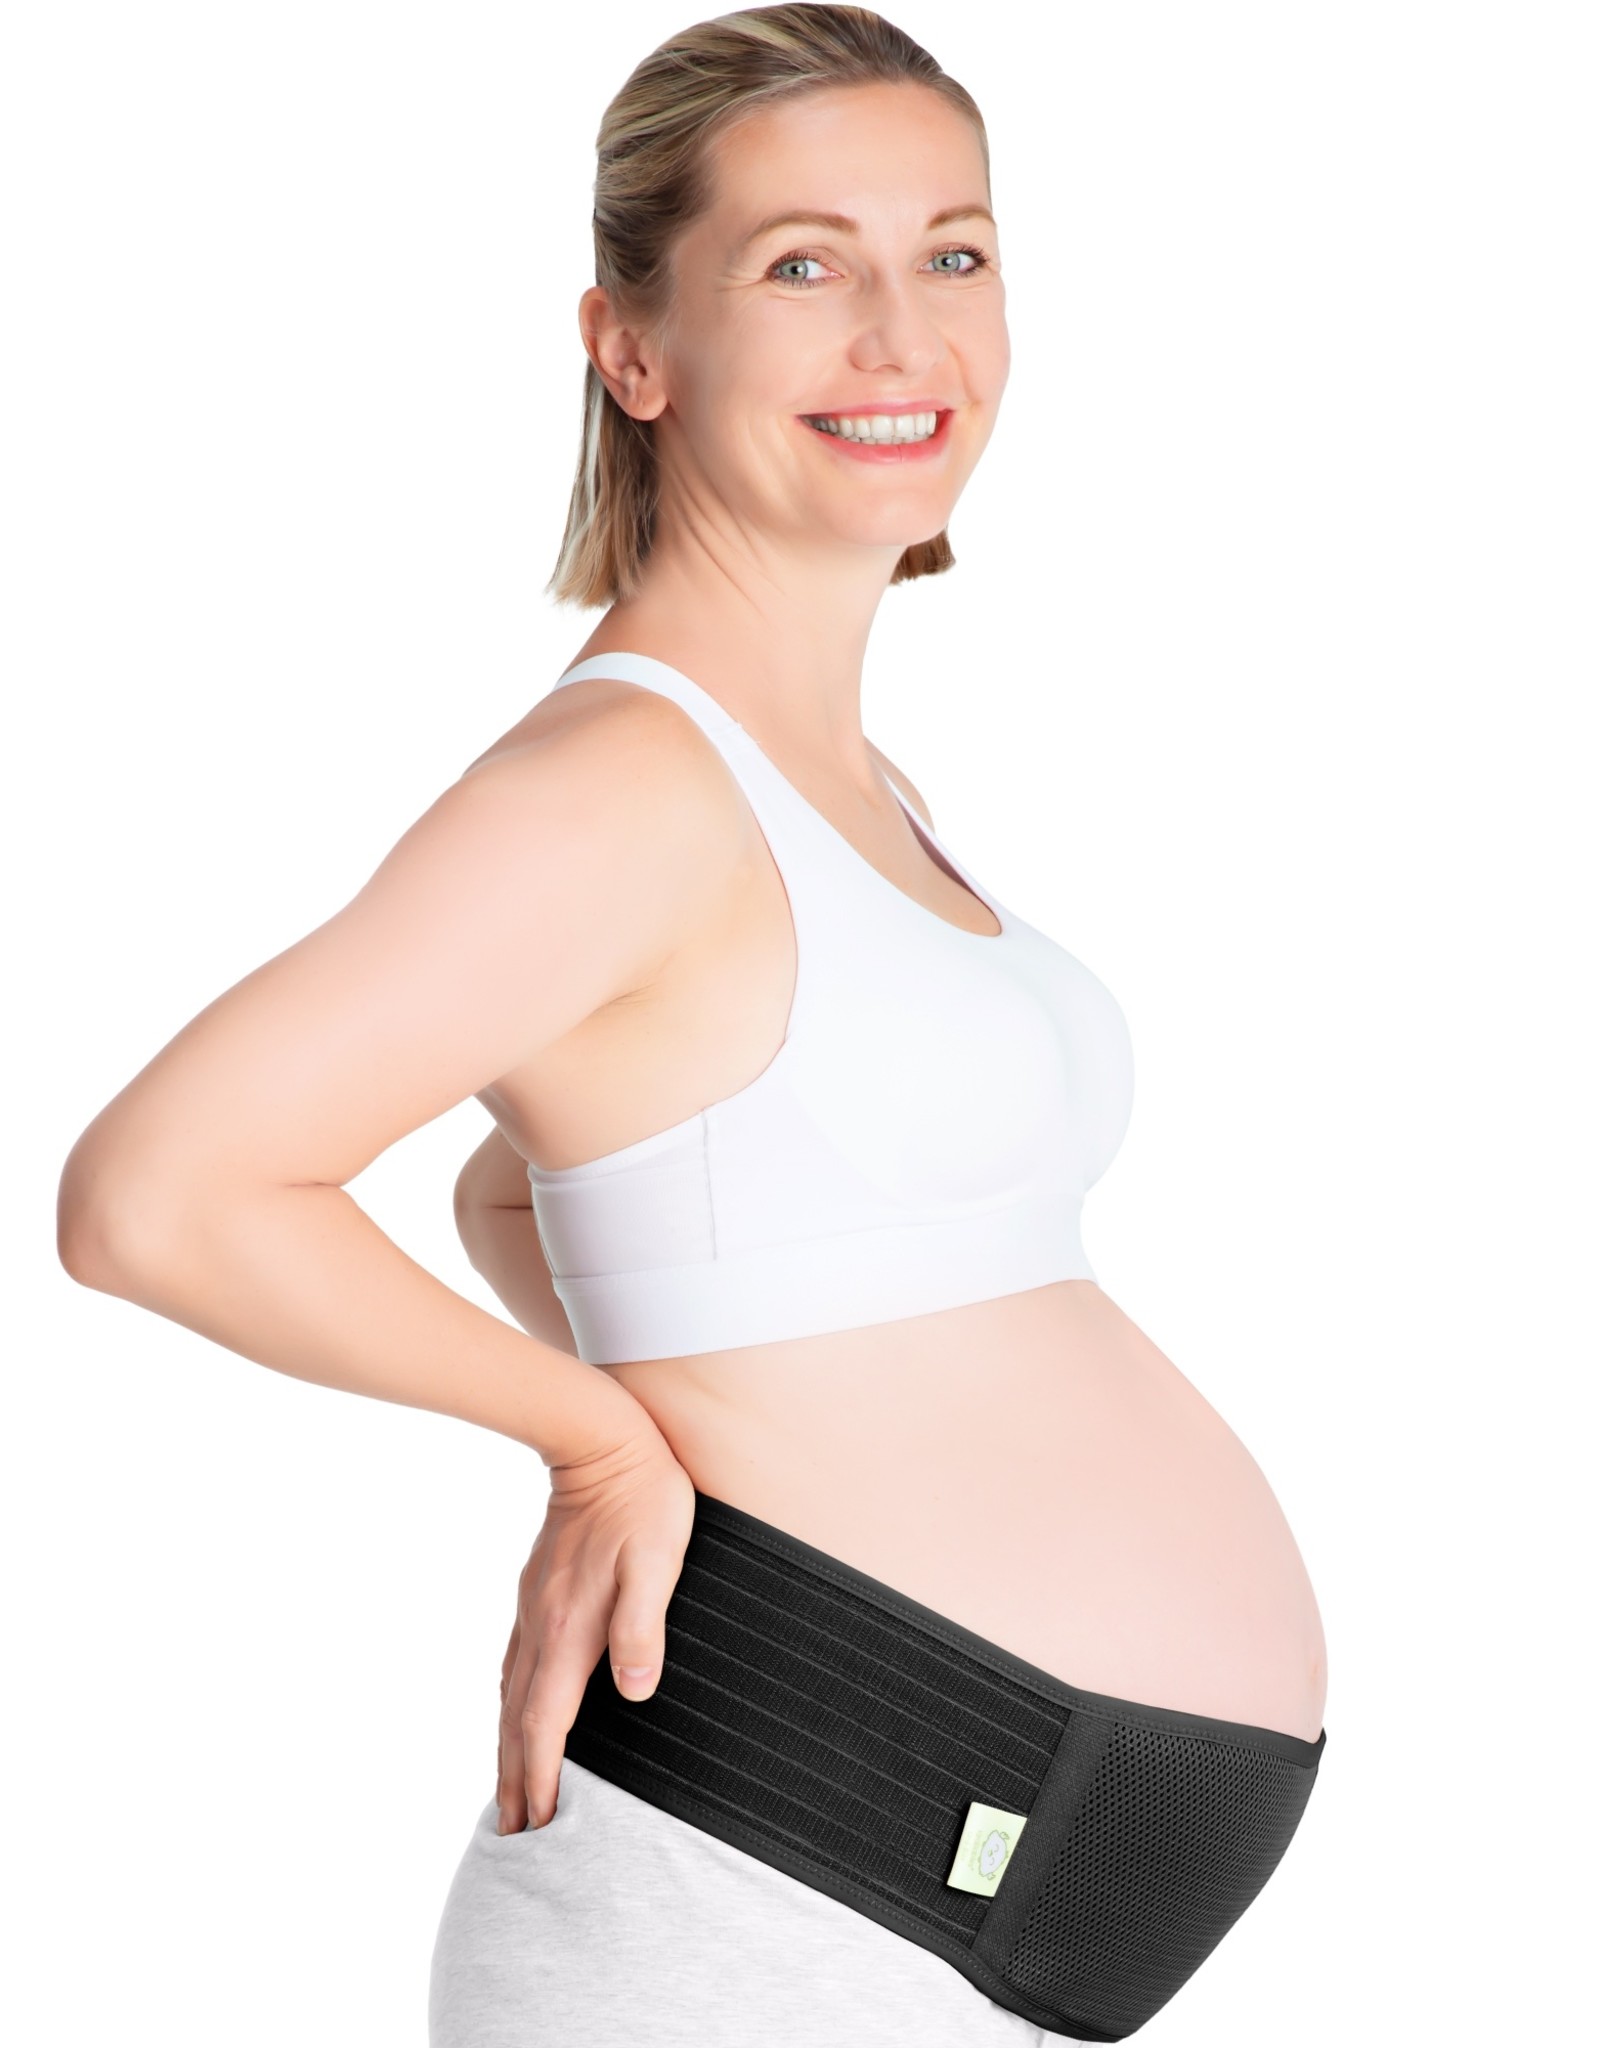 Belly Band for Pregnancy, Pregnancy Belt - Maternity Belt for Back